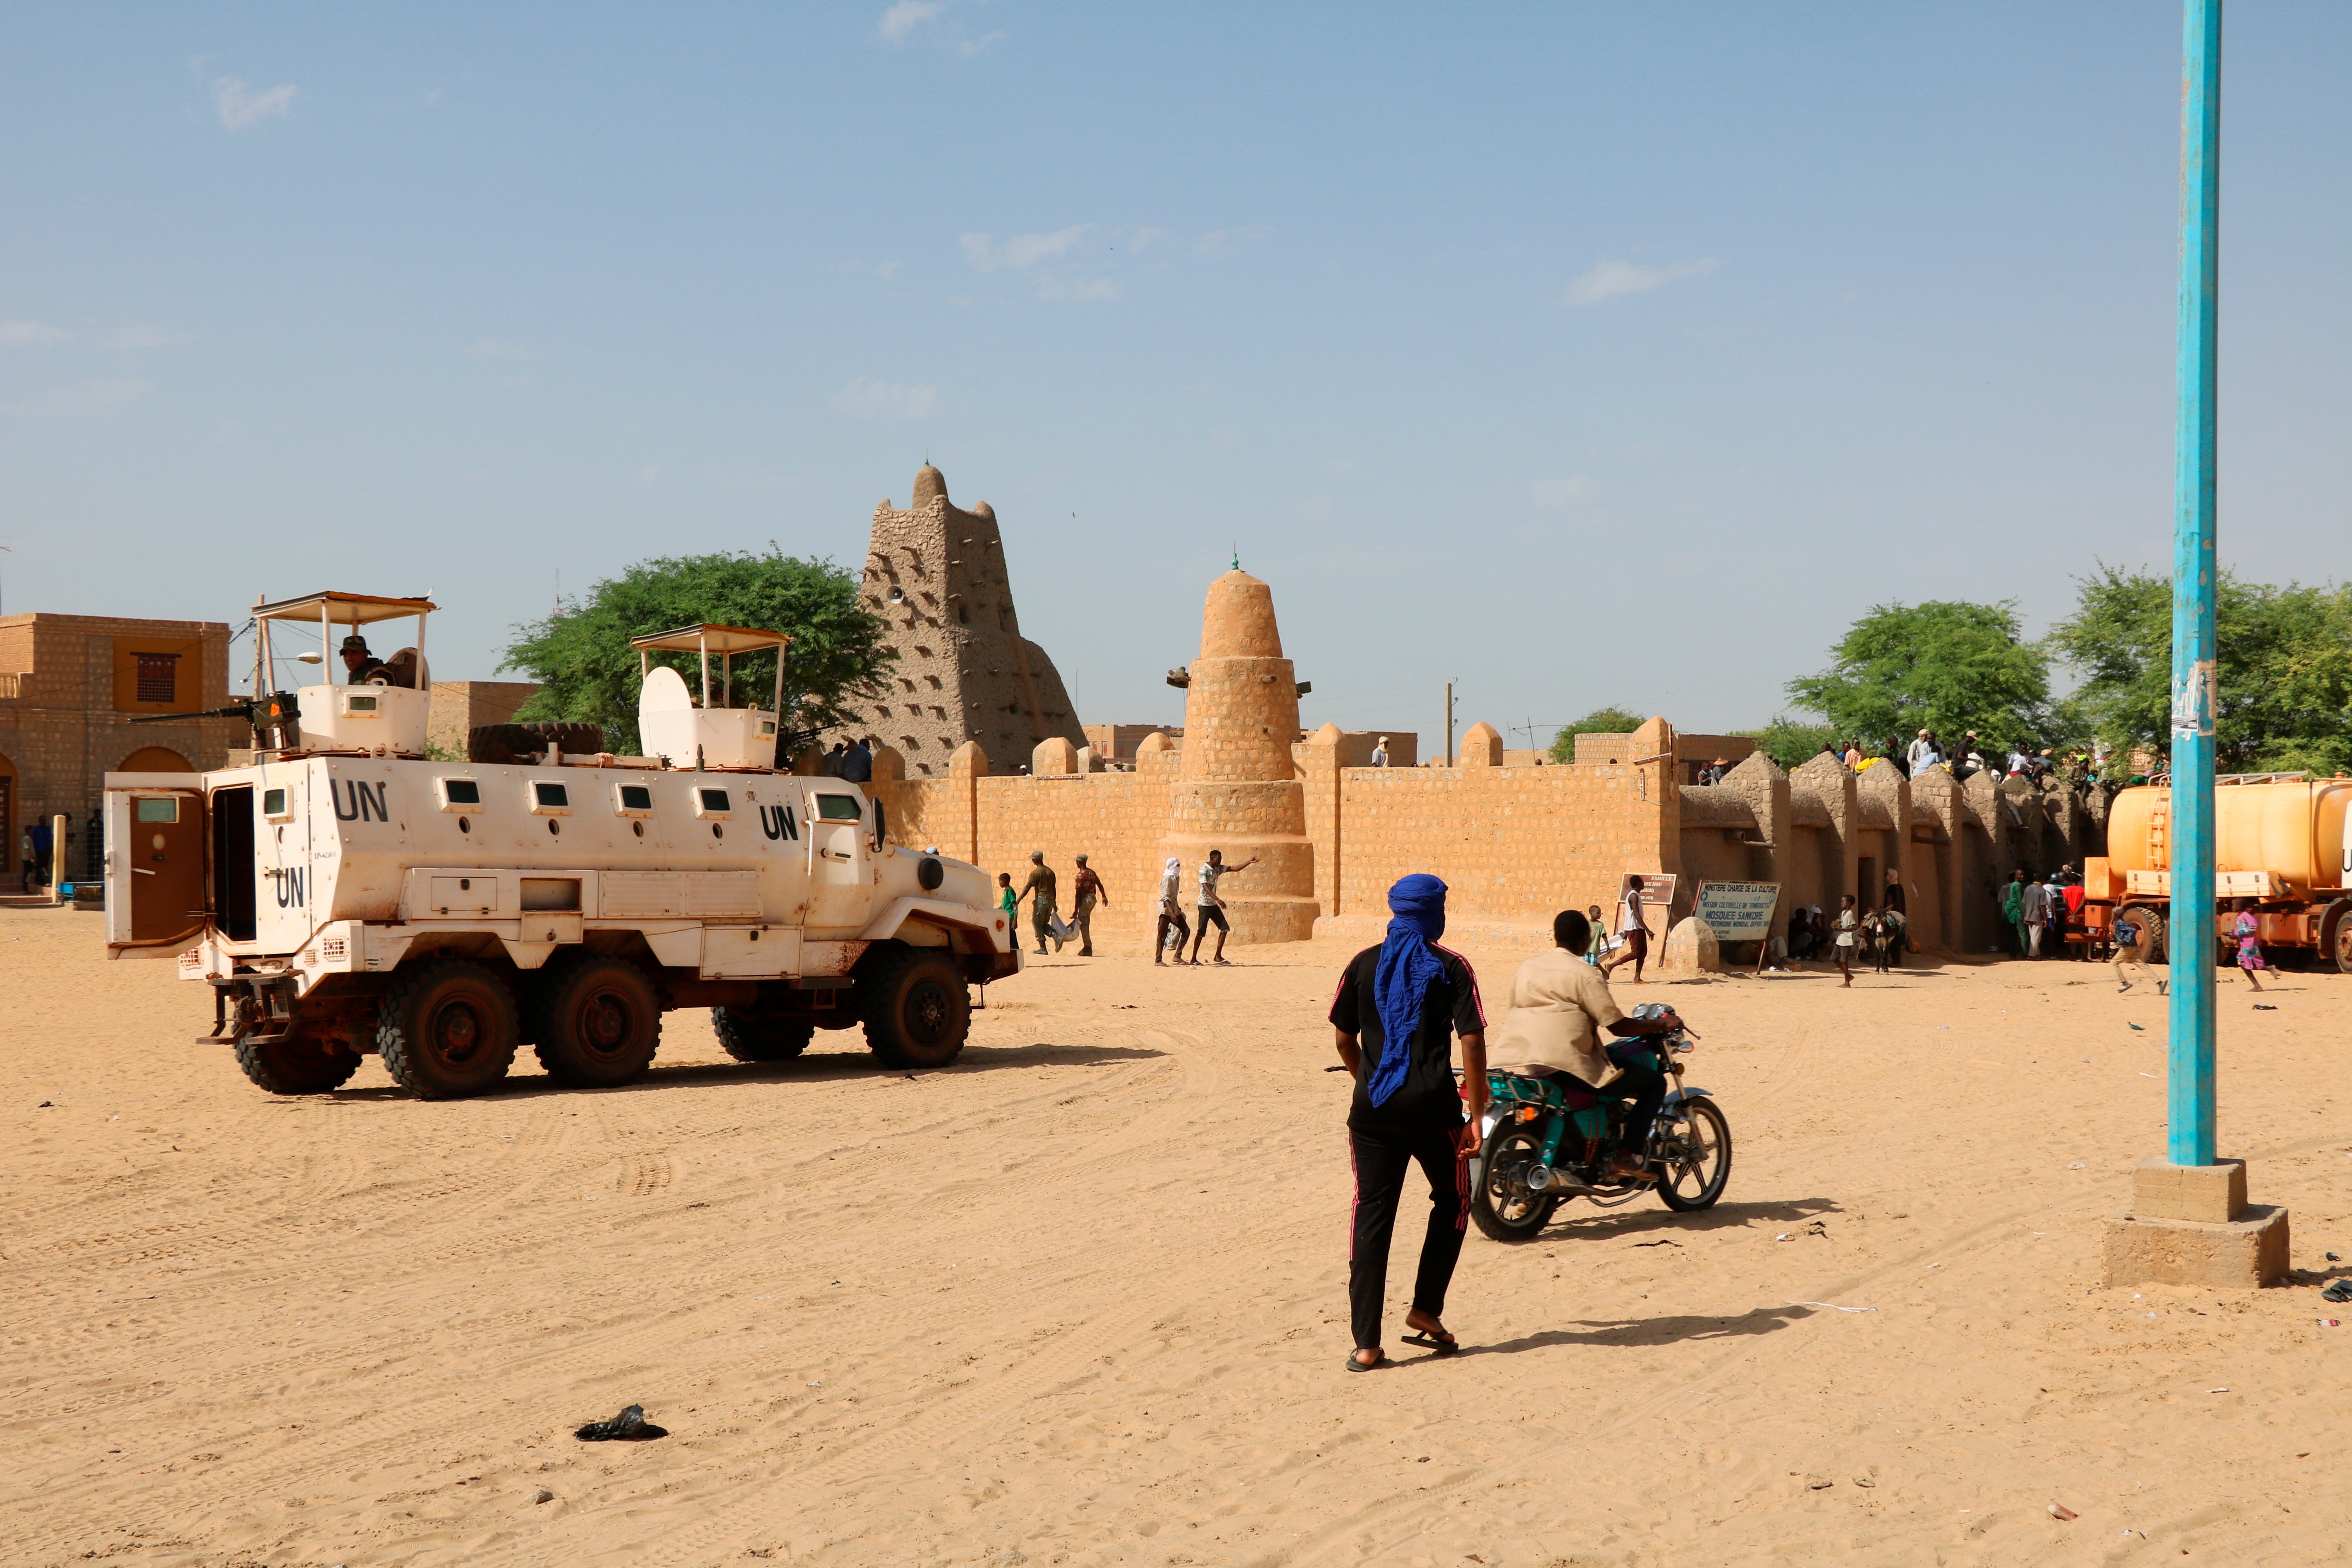 UN forces in Mali